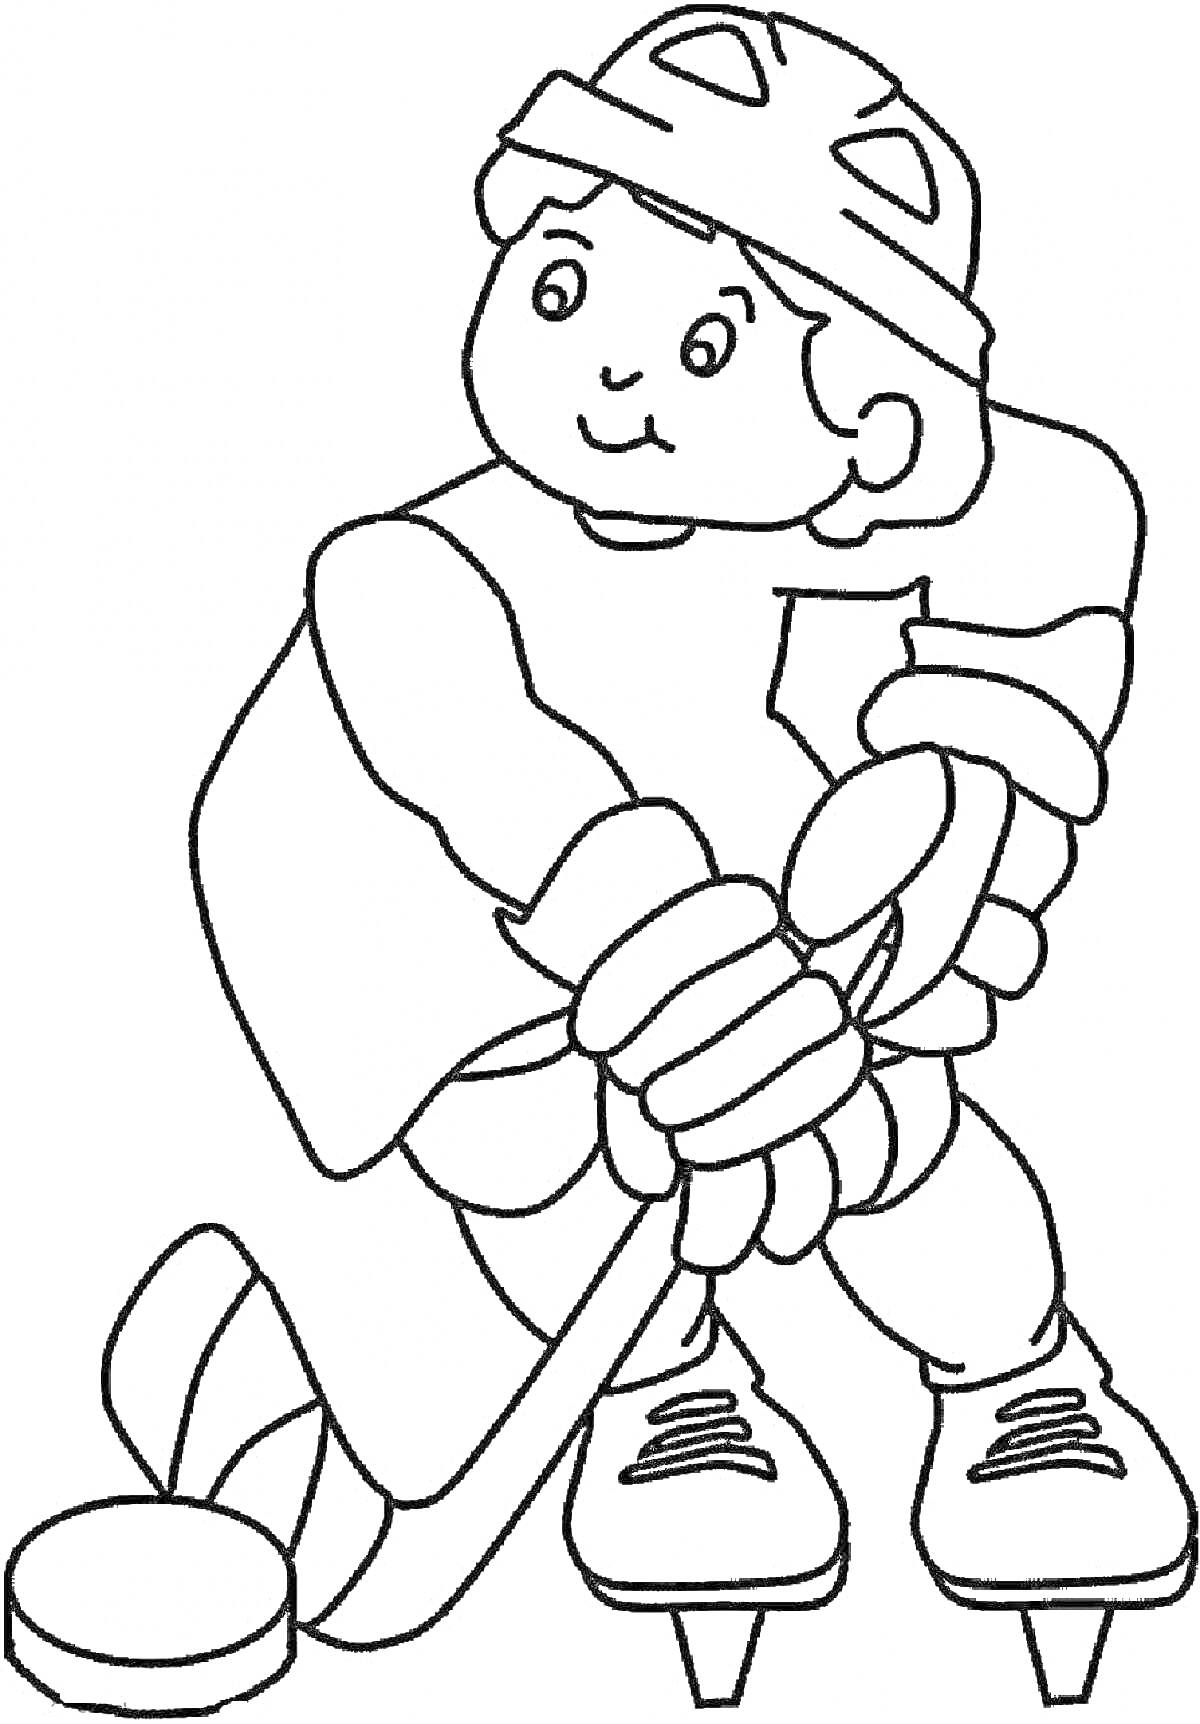 Раскраска Ребёнок в хоккейной форме играет в хоккей с клюшкой и шайбой на коньках